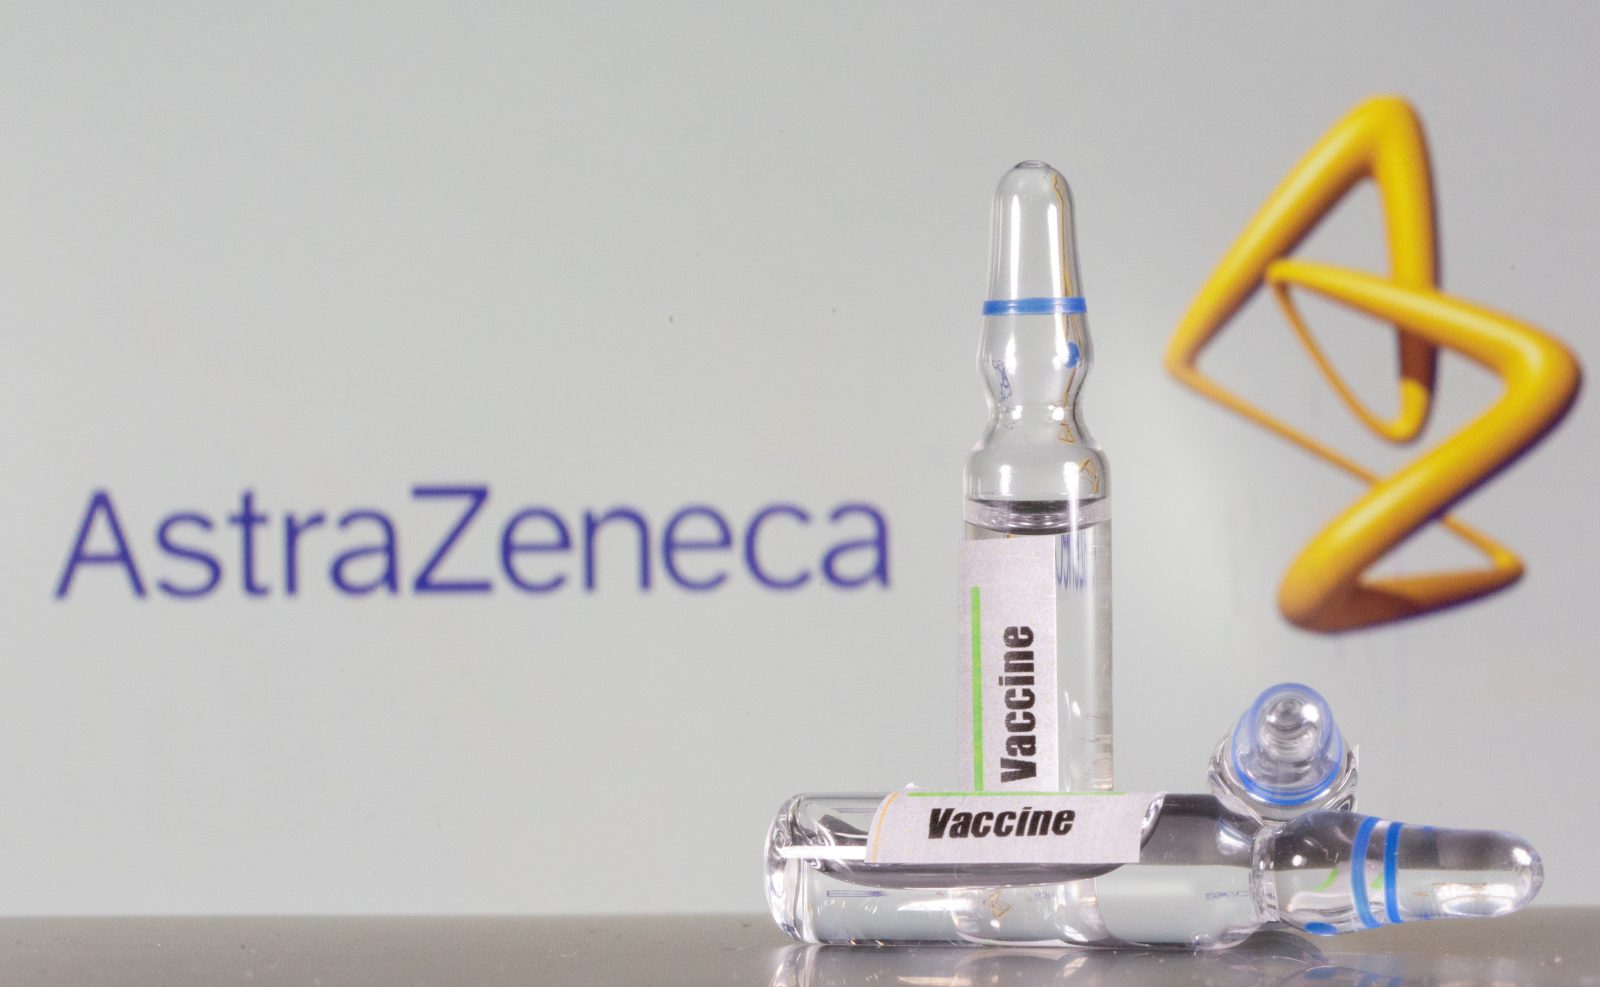 Praha dostala nabídku na 400 tisíc dávek vakcíny AstraZeneca. Nabídku od firmy Fatrade nechá prověřit | iROZHLAS - spolehlivé zprávy